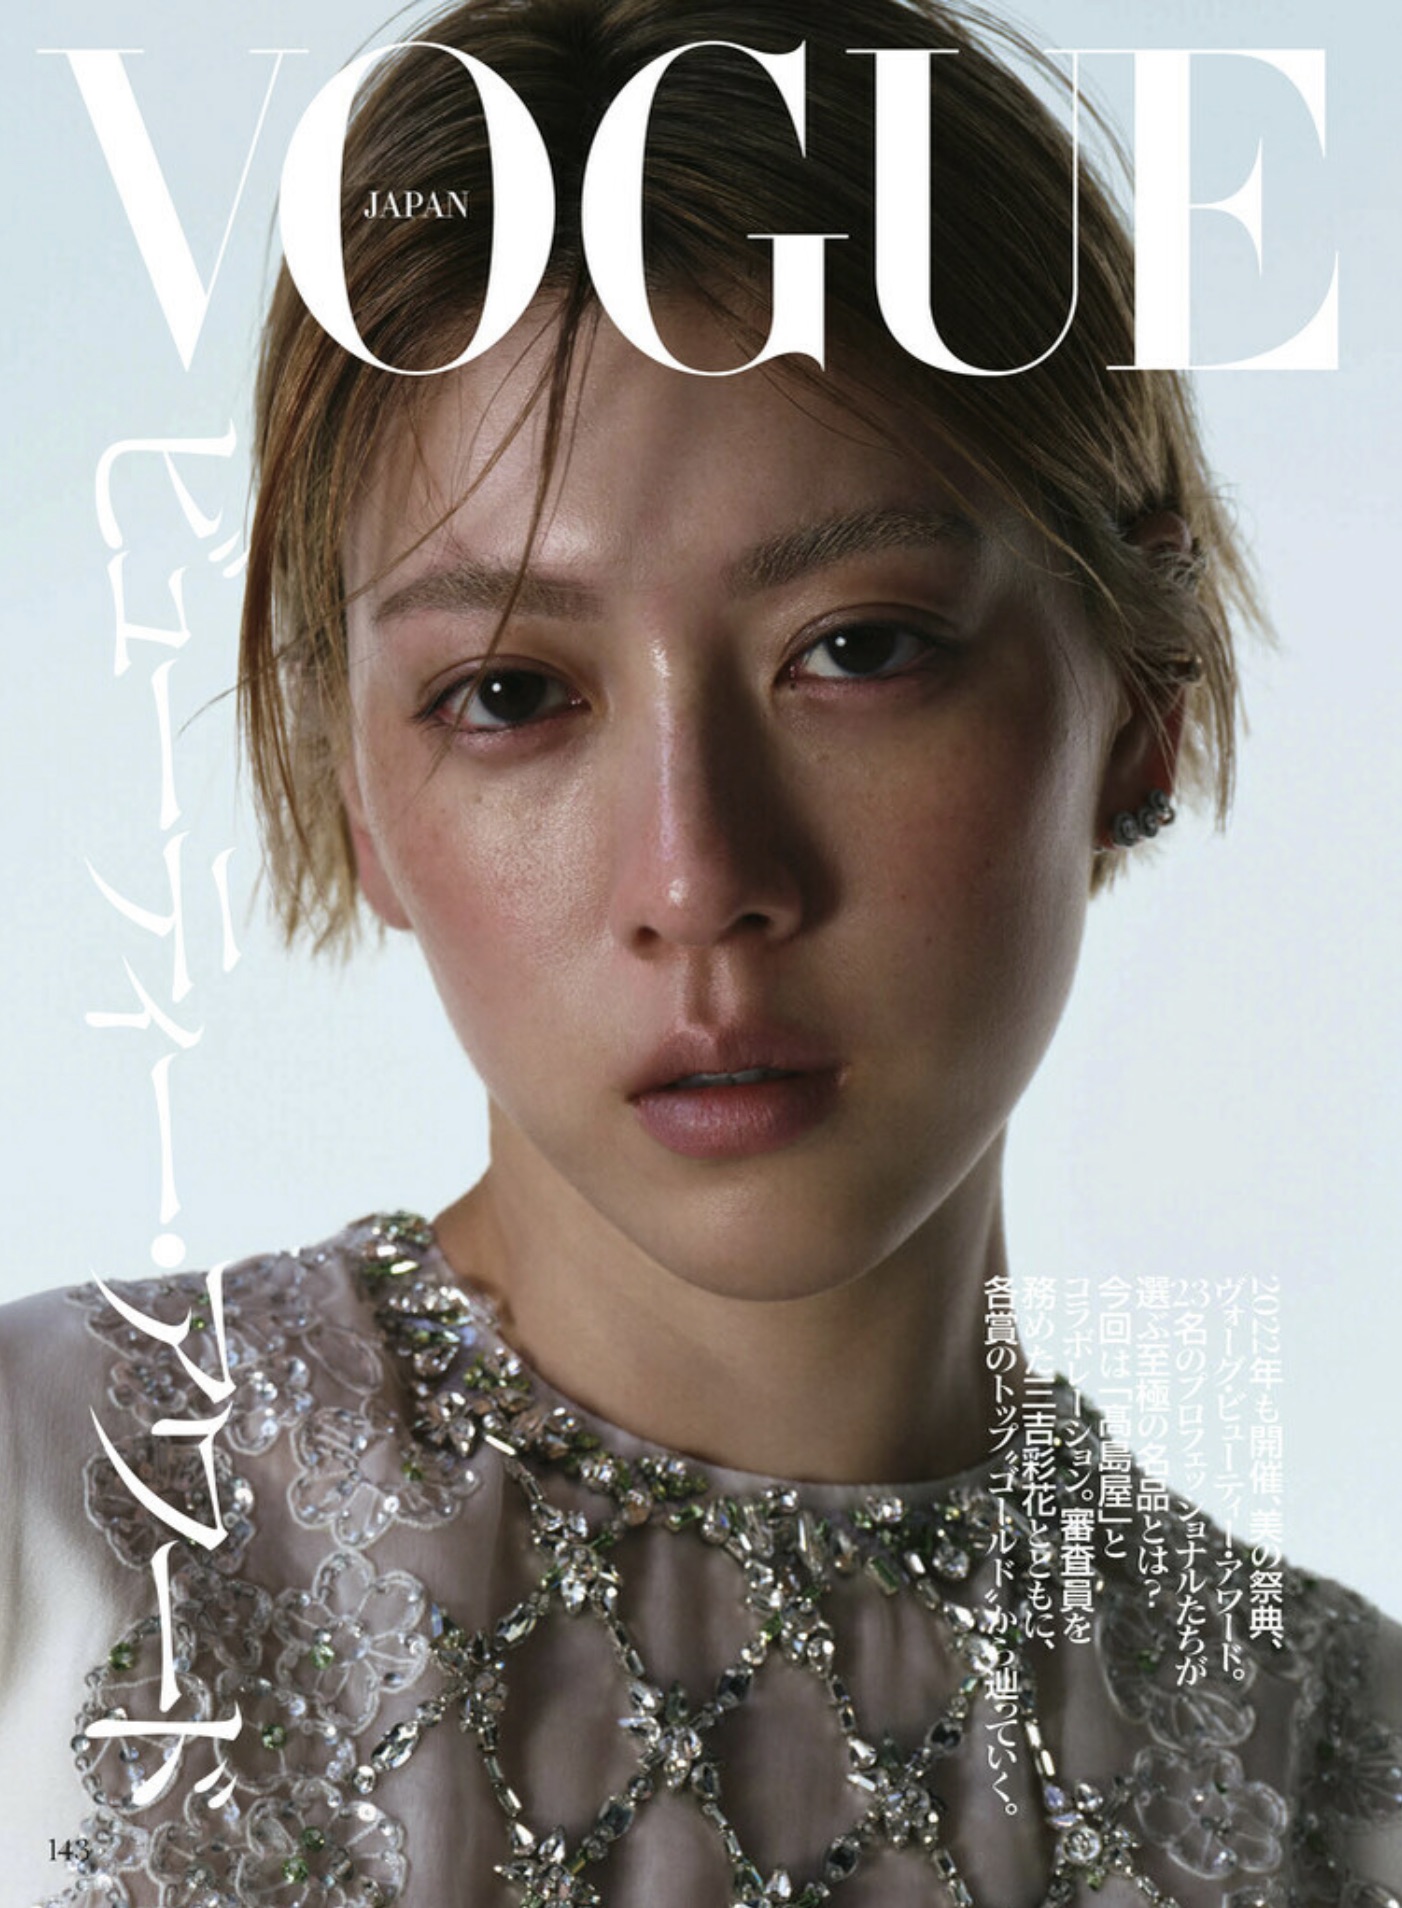 Vogue Japan Beauty